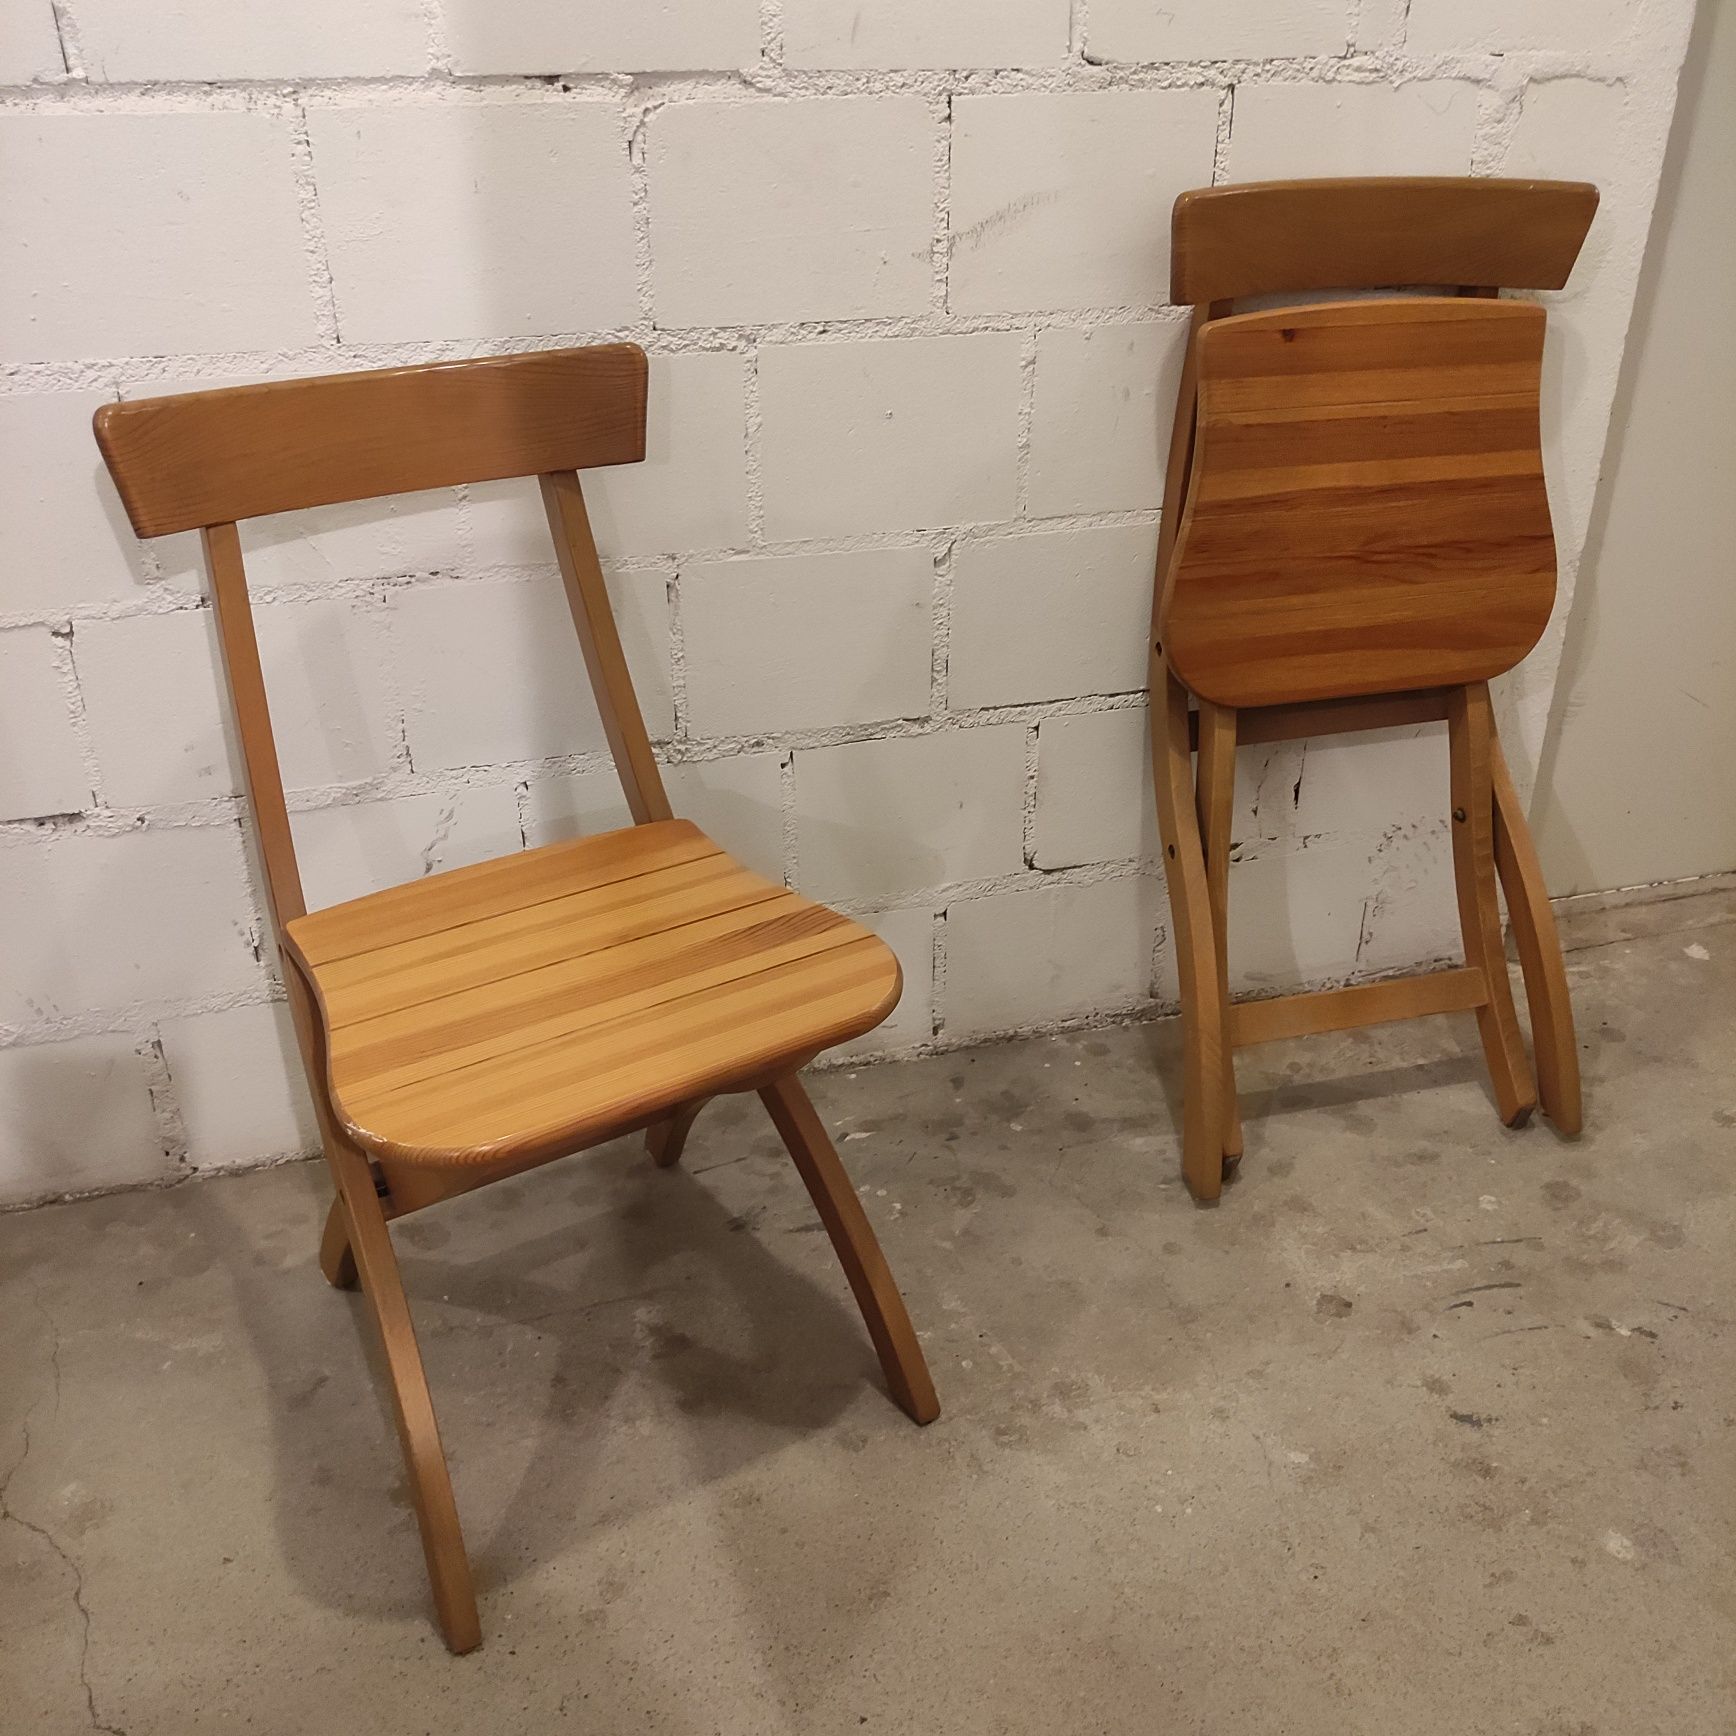 Kpl. 2 krzesła drewniane składane